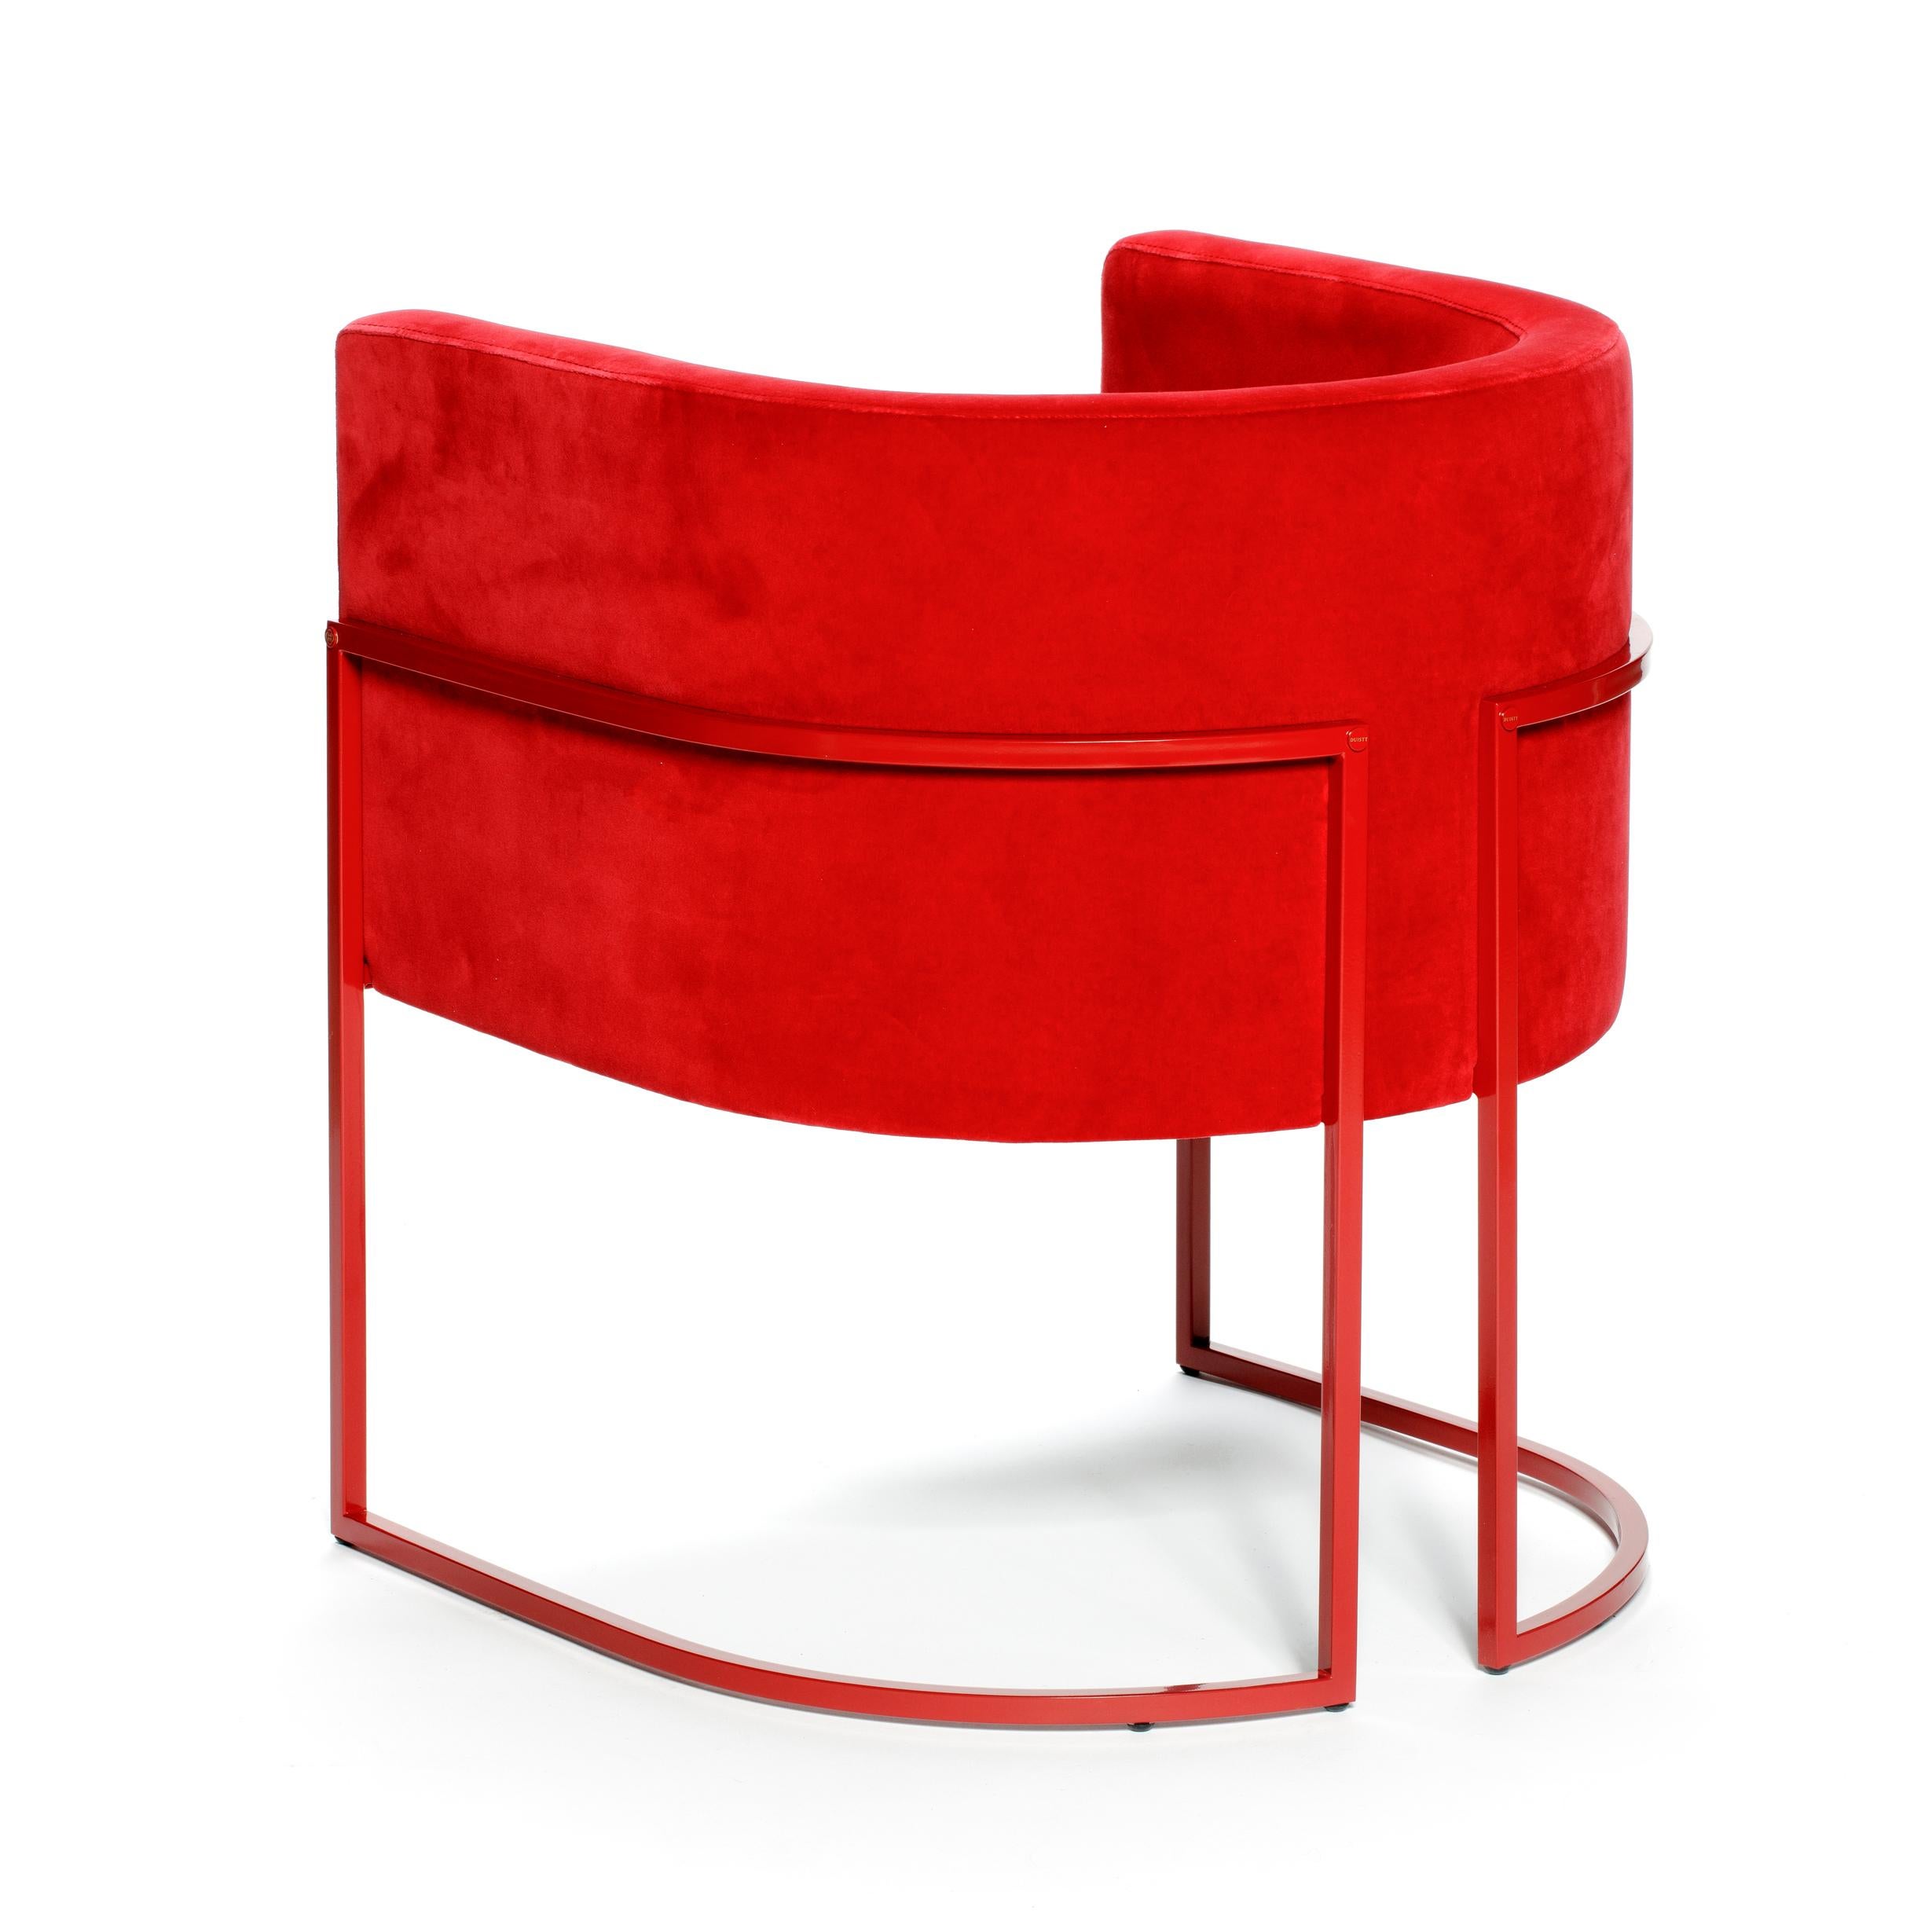 Chaise Julius, en fer laqué velours rouge, fabriquée à la main au Portugal par Duistt.

La chaise JULIUS est une pièce de luxe intemporelle et discrète, construite avec des matériaux nobles tels que le laiton et le velours de coton. Au-delà du fait,